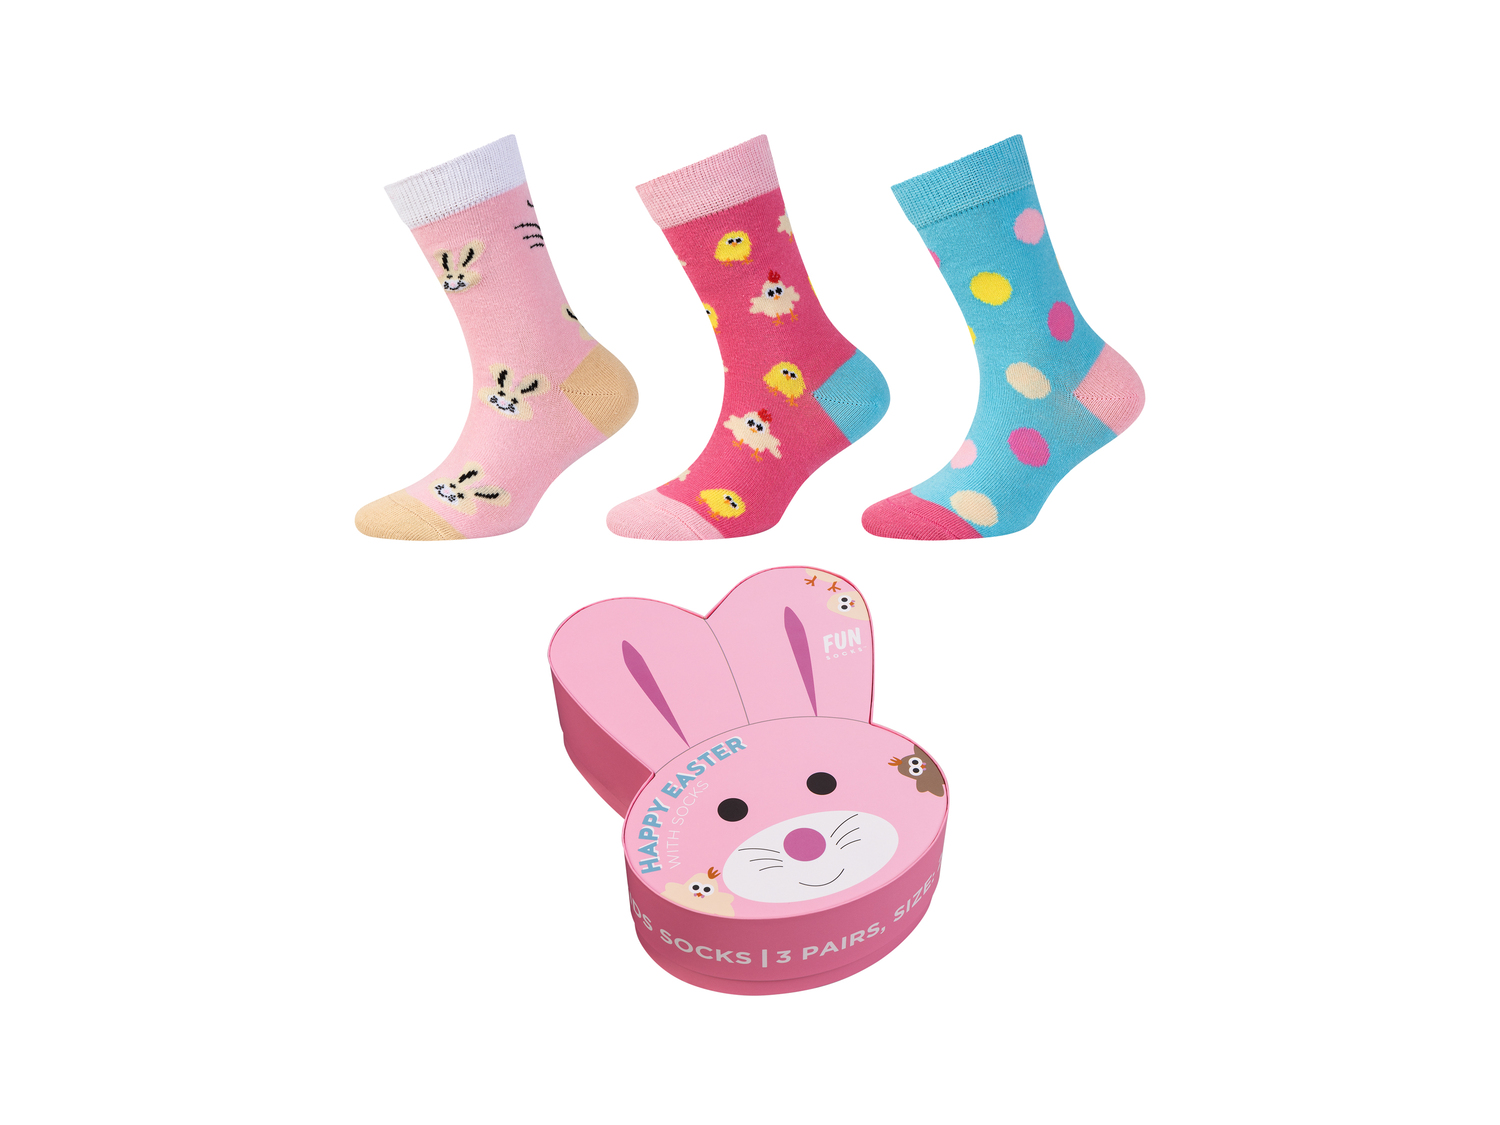 Calzini da bambini Fun-socks, prezzo 6.99 &#8364; 
3 paia - Misure: 23-34 
- ...